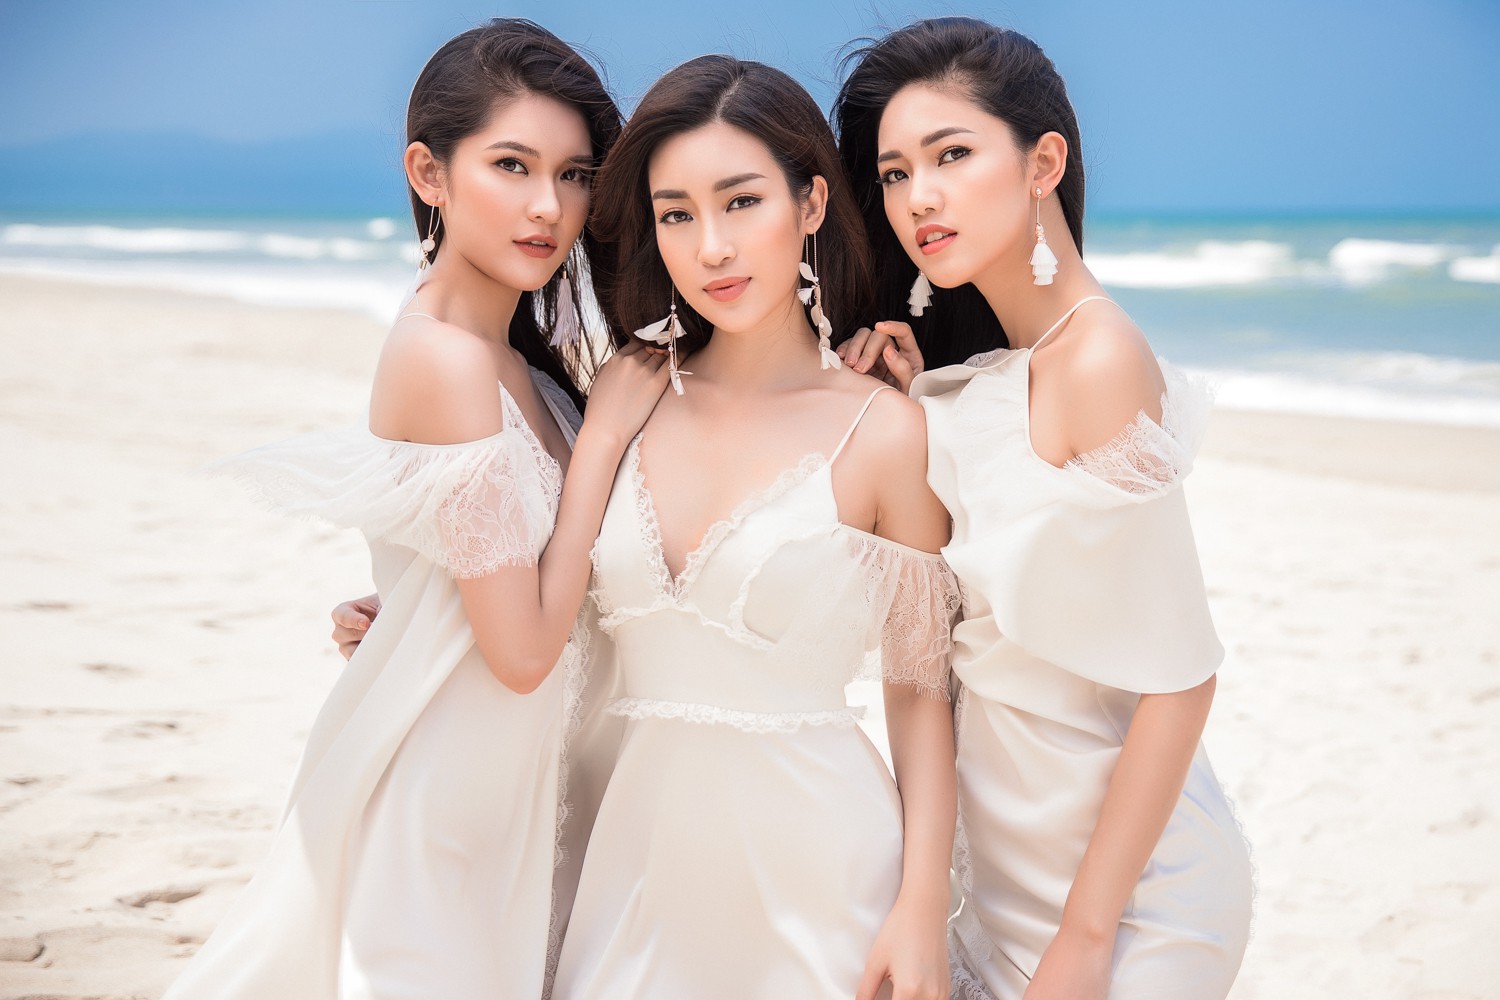 Ghen tỵ với bộ ảnh đẹp lung linh của Hội bạn thân Hoa hậu Mỹ Linh - Thùy Dung - Thanh Tú - Ảnh 2.